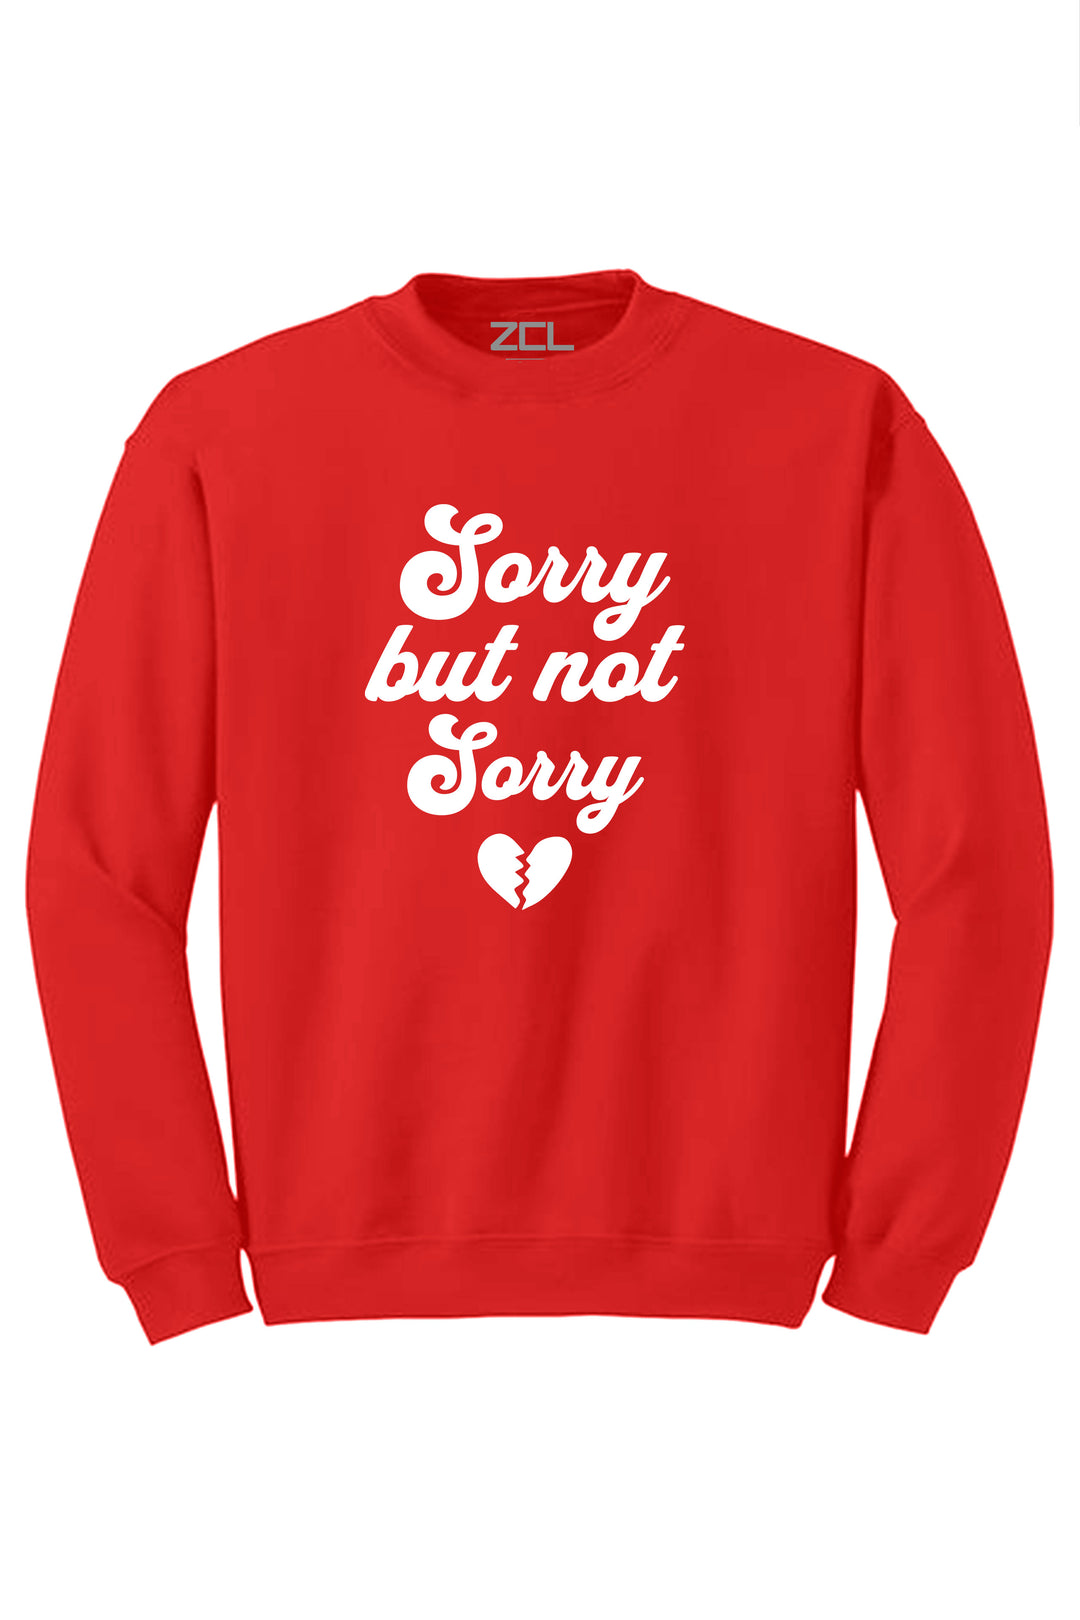 Sorry Not Sorry Crewneck Sweatshirt (White Logo) - Zamage